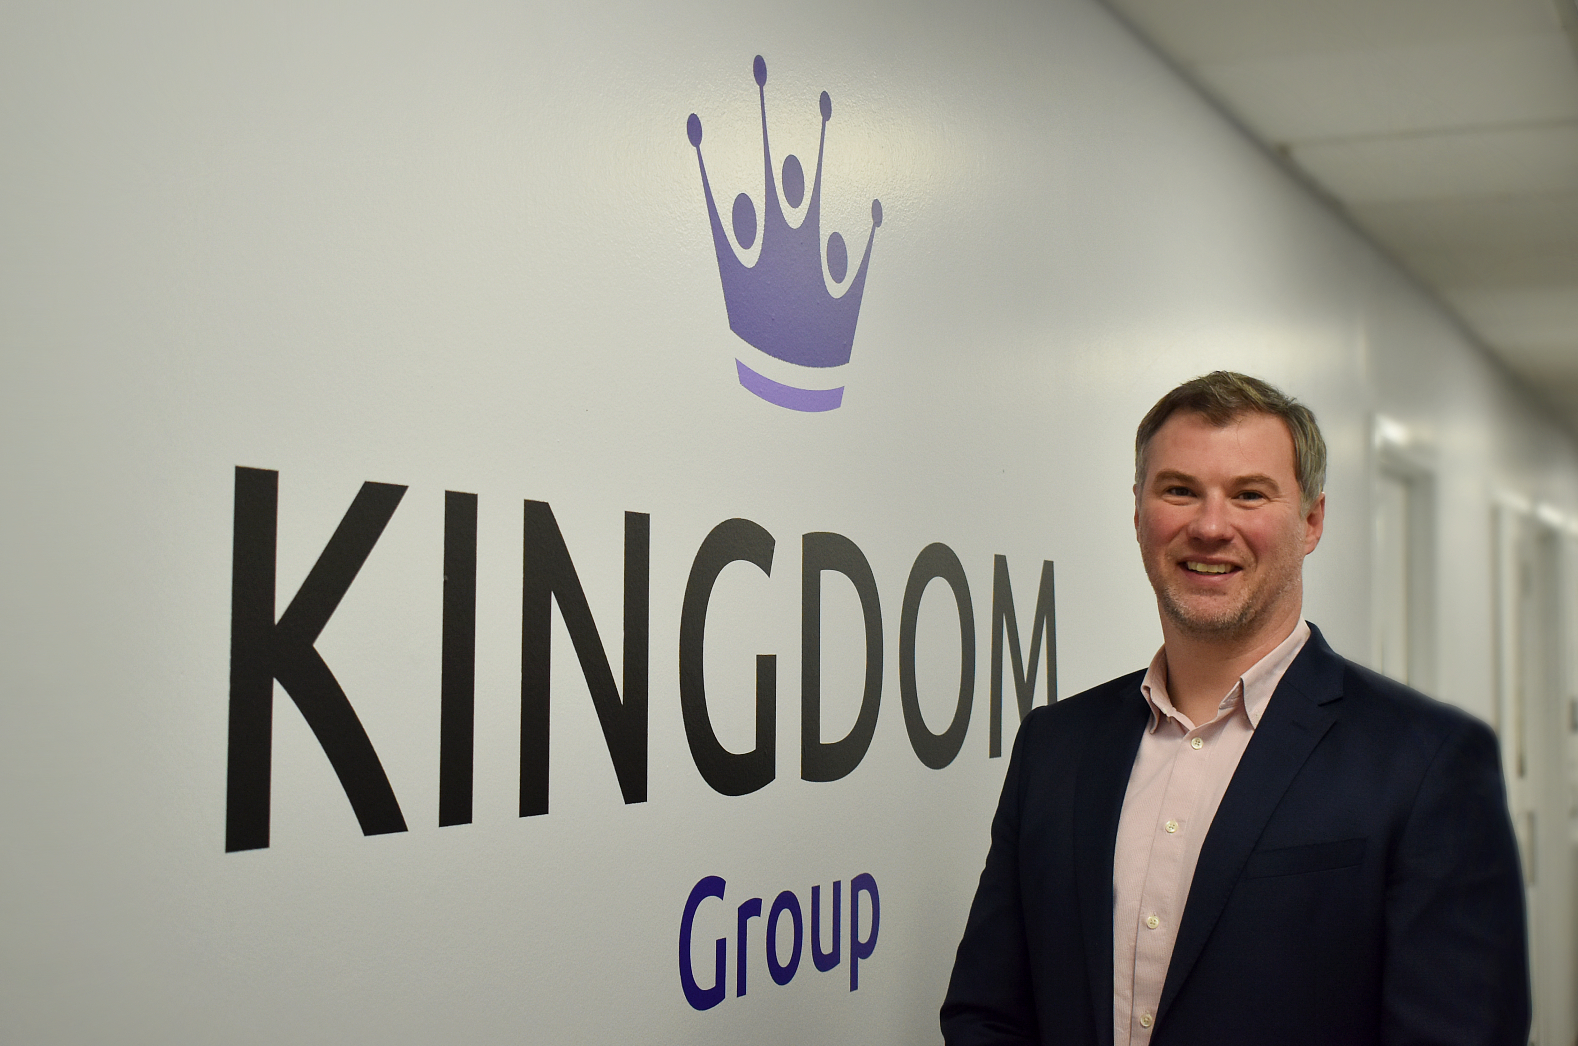 Kingdom appoints James Hudson as asset management director